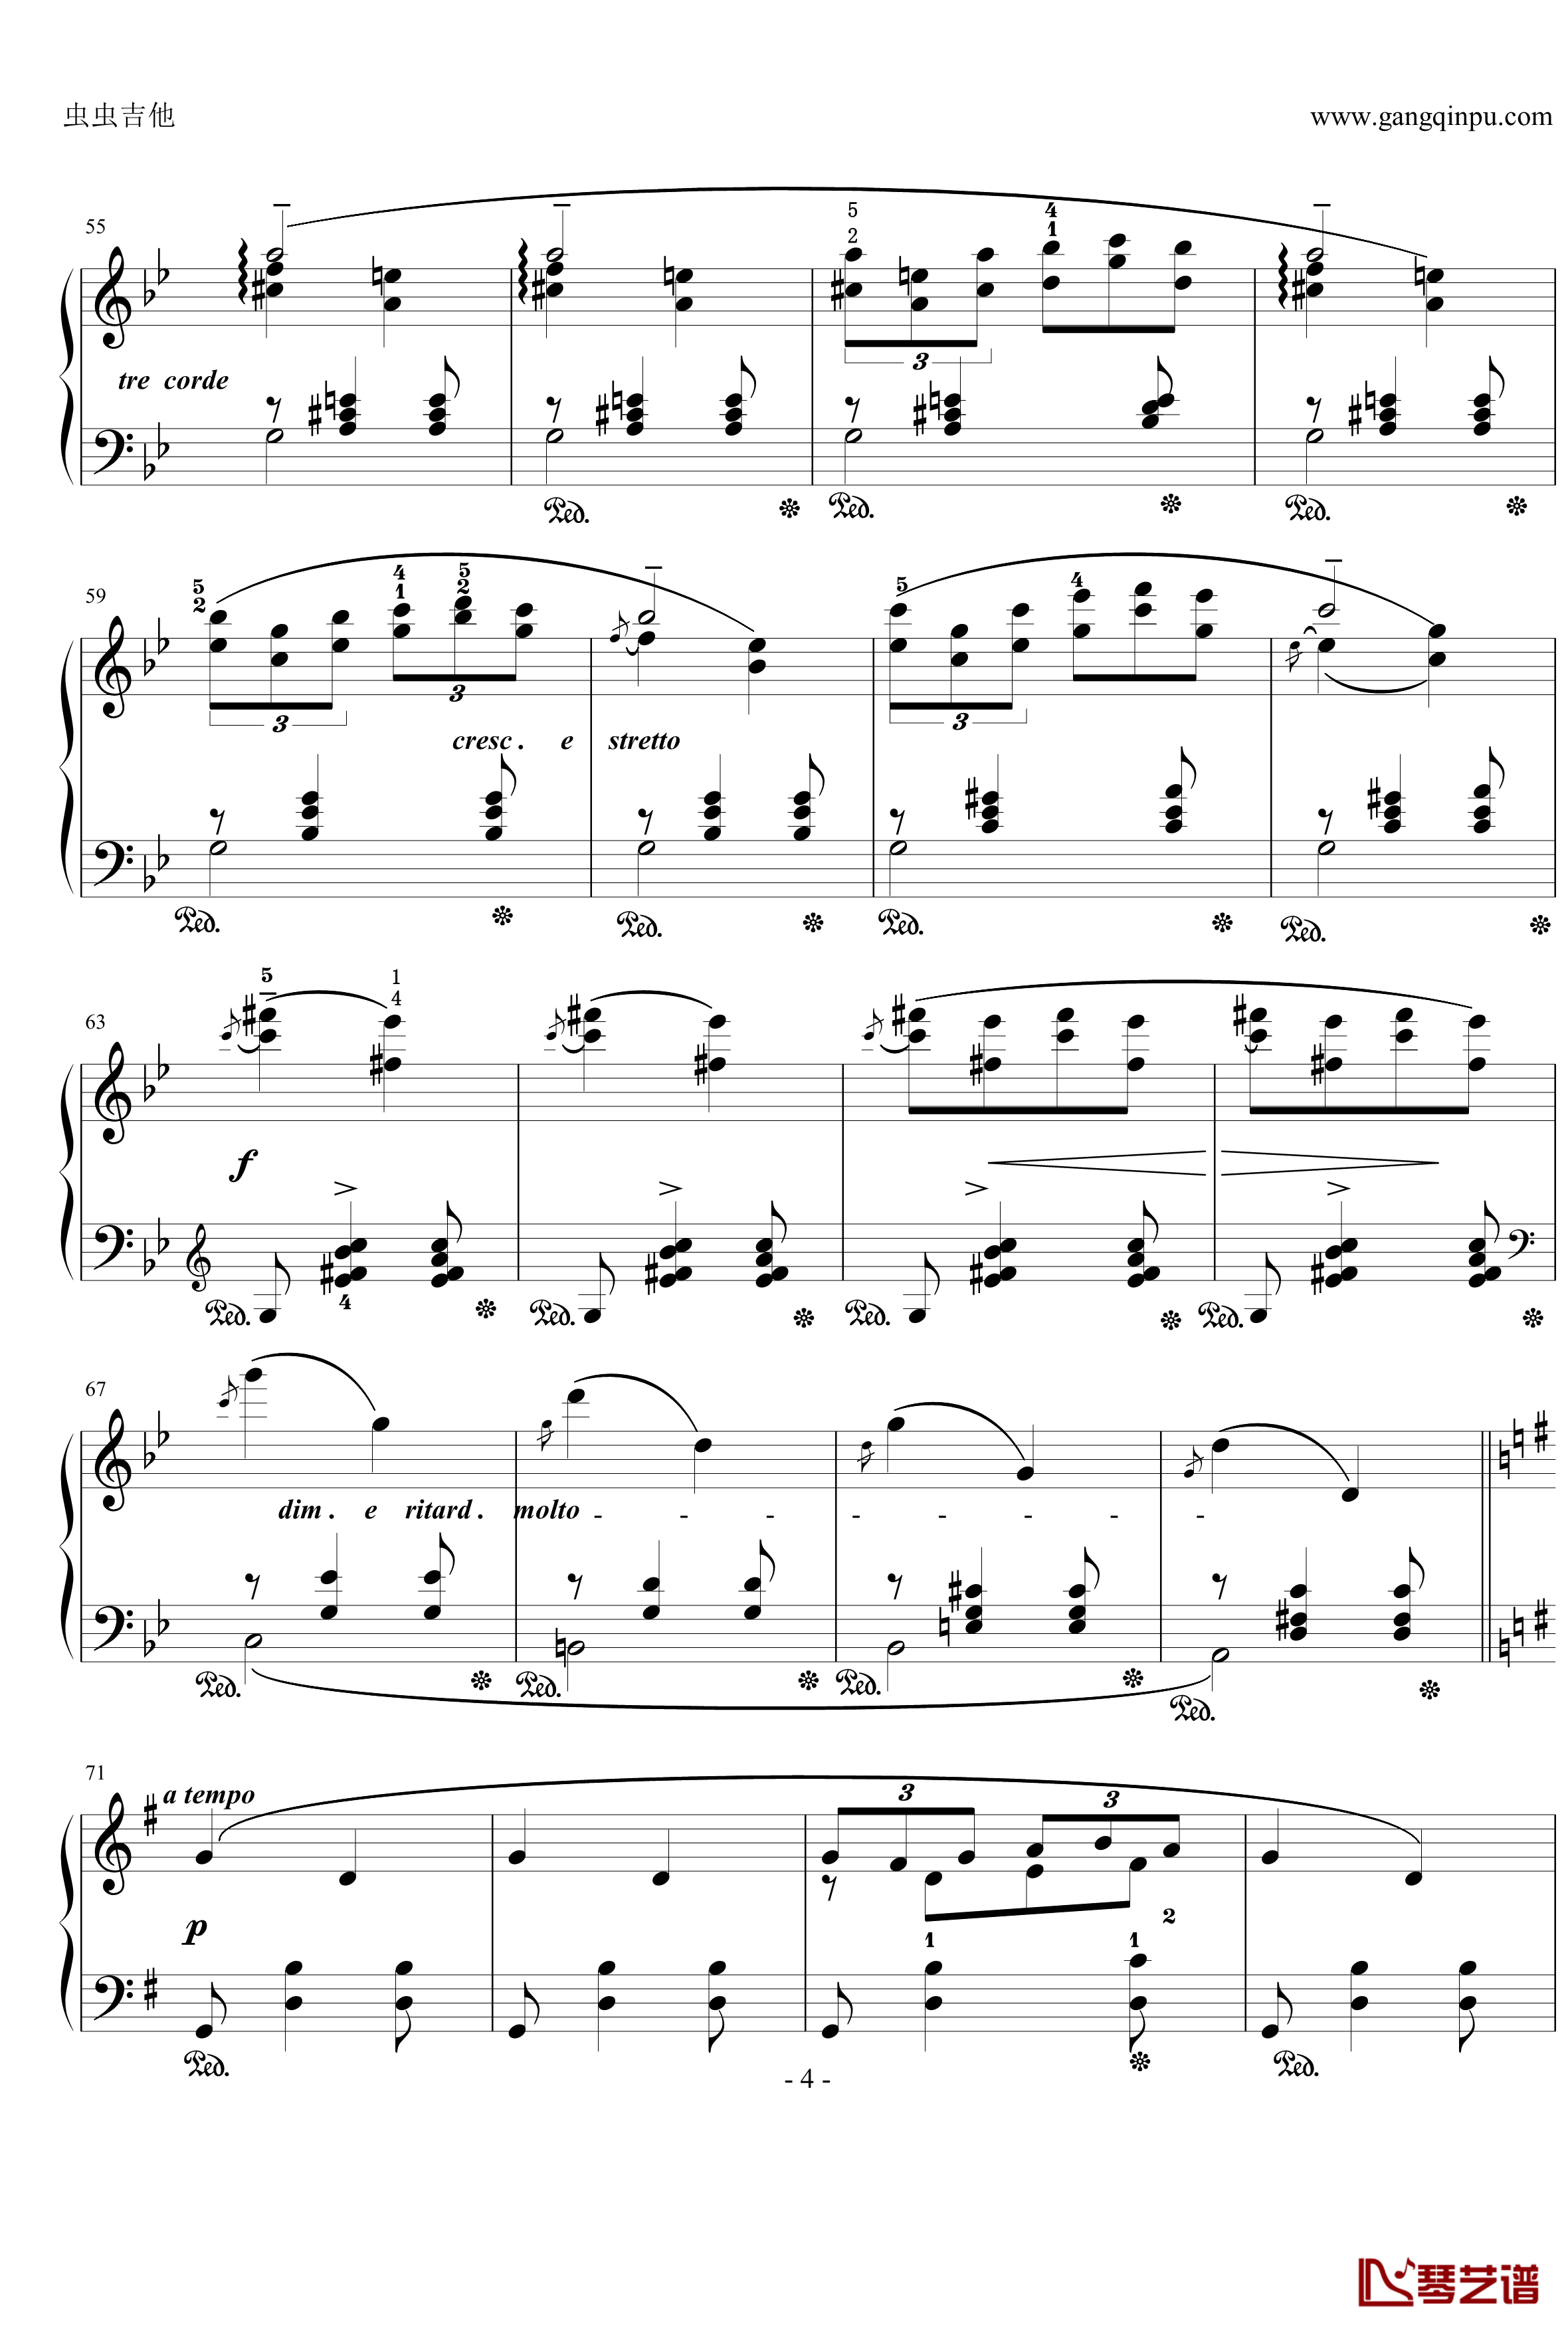 摇篮曲钢琴谱-格里格4